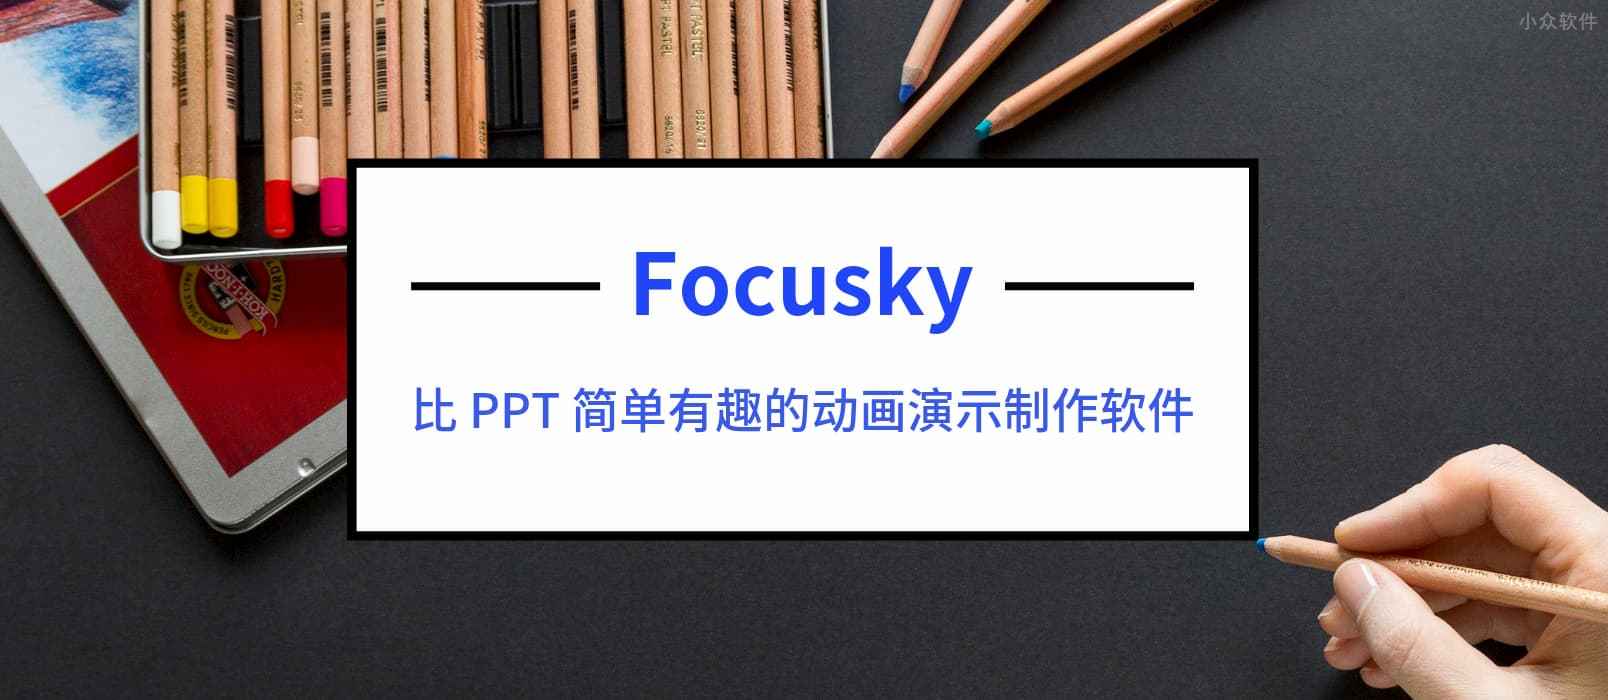 比 PPT 简单有趣的动画演示制作软件 Focusky 送特别版